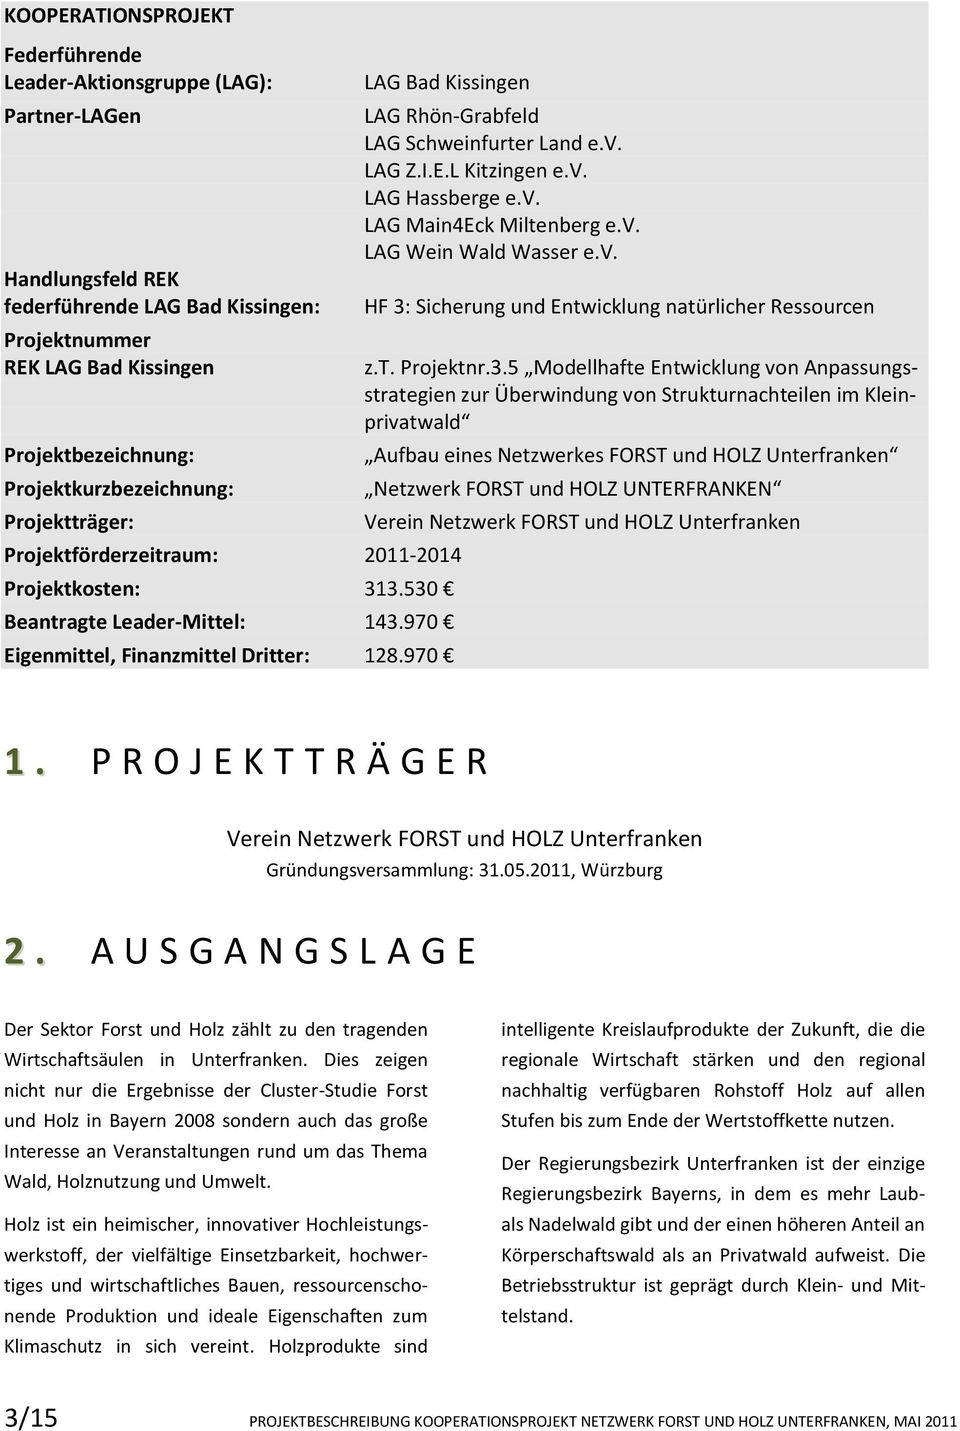 970 LAG Rhön-Grabfeld LAG Schweinfurter Land e.v. LAG Z.I.E.L Kitzingen e.v. LAG Hassberge e.v. LAG Main4Eck Miltenberg e.v. LAG Wein Wald Wasser e.v. HF 3: Sicherung und Entwicklung natürlicher Ressourcen z.